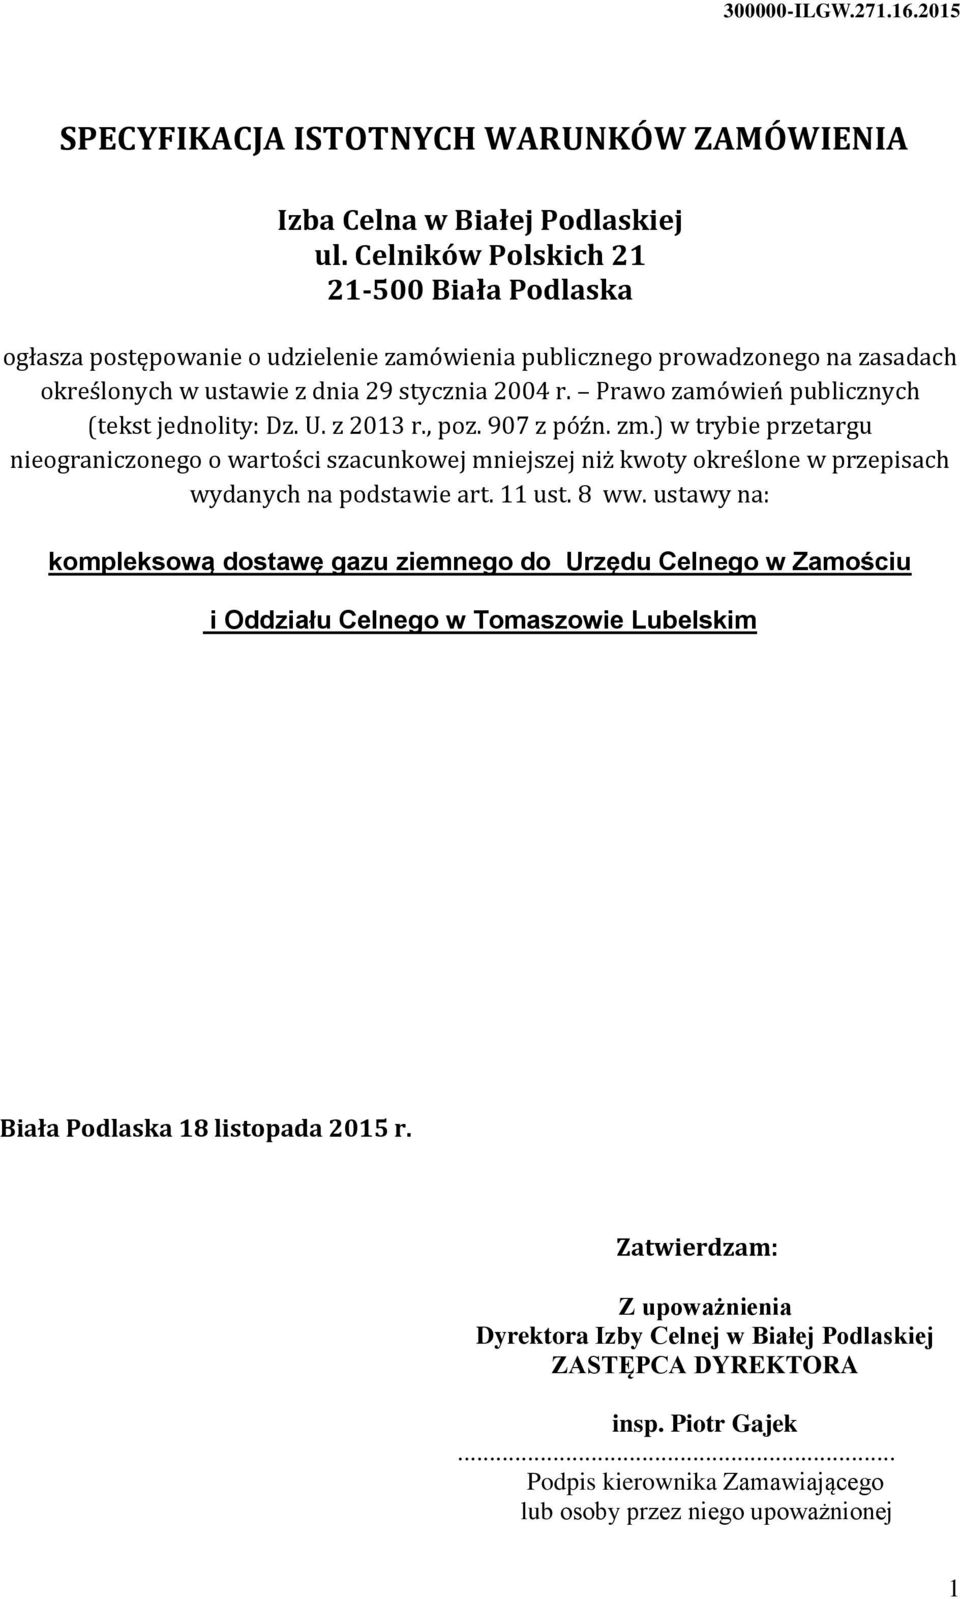 Prawo zamówień publicznych (tekst jednolity: Dz. U. z 2013 r., poz. 907 z późn. zm.